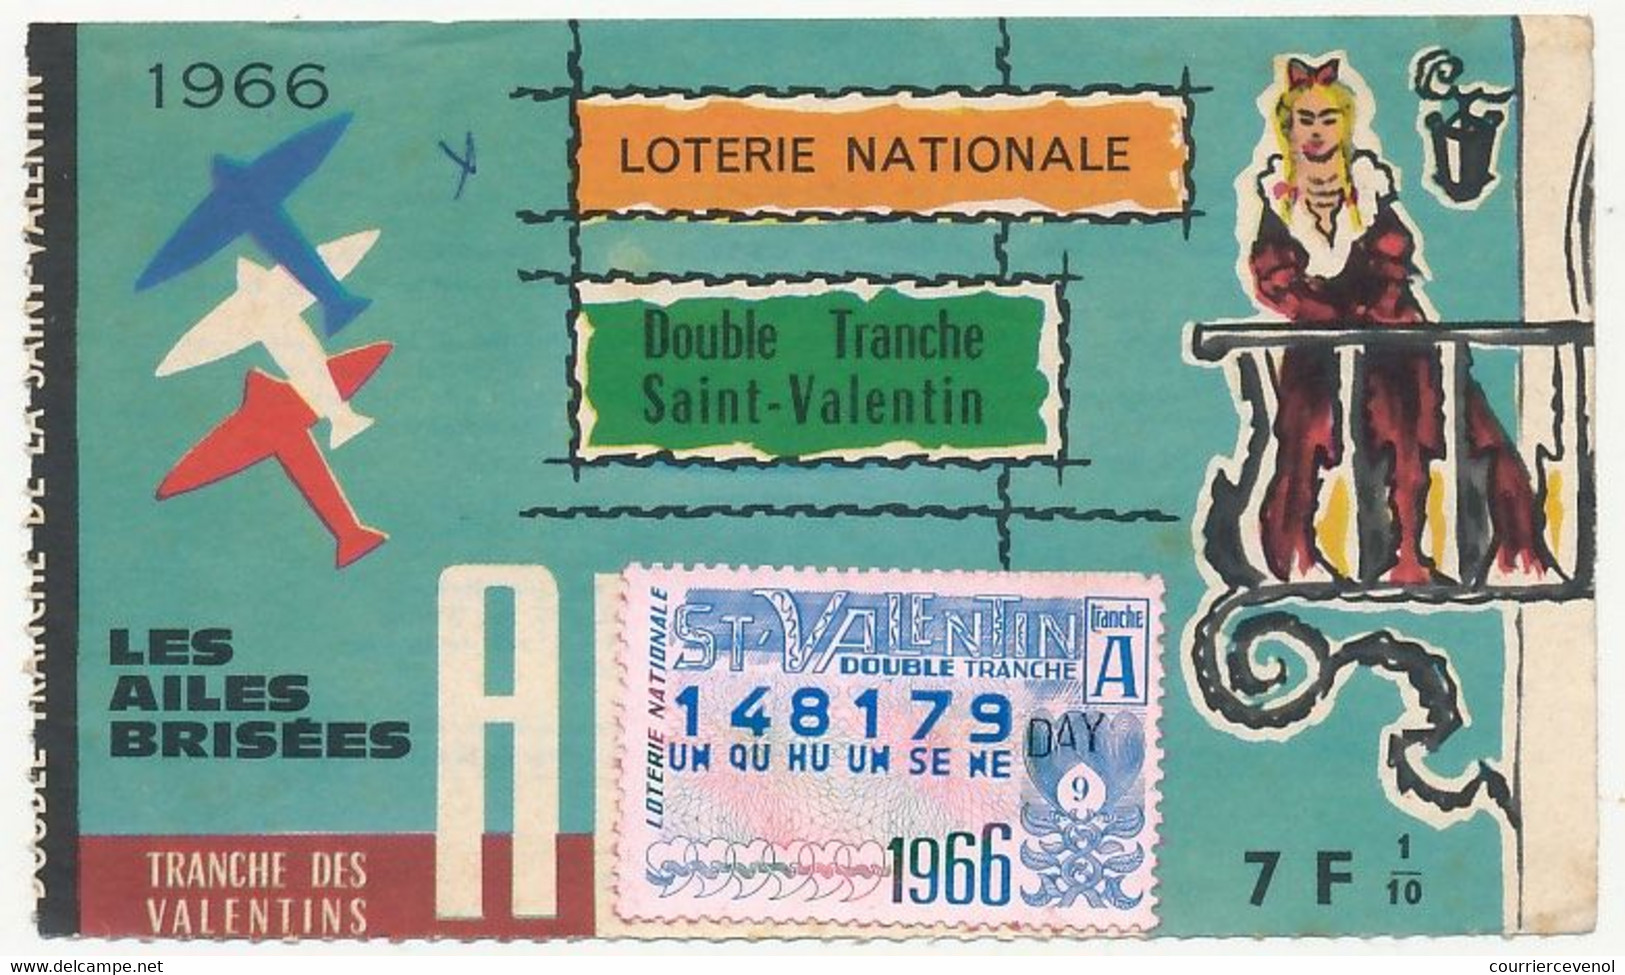 FRANCE - Loterie Nationale - 1/10e Les Ailes Brisées - Double Tranche Saint Valentin - Double Tranche 1966 - Lottery Tickets